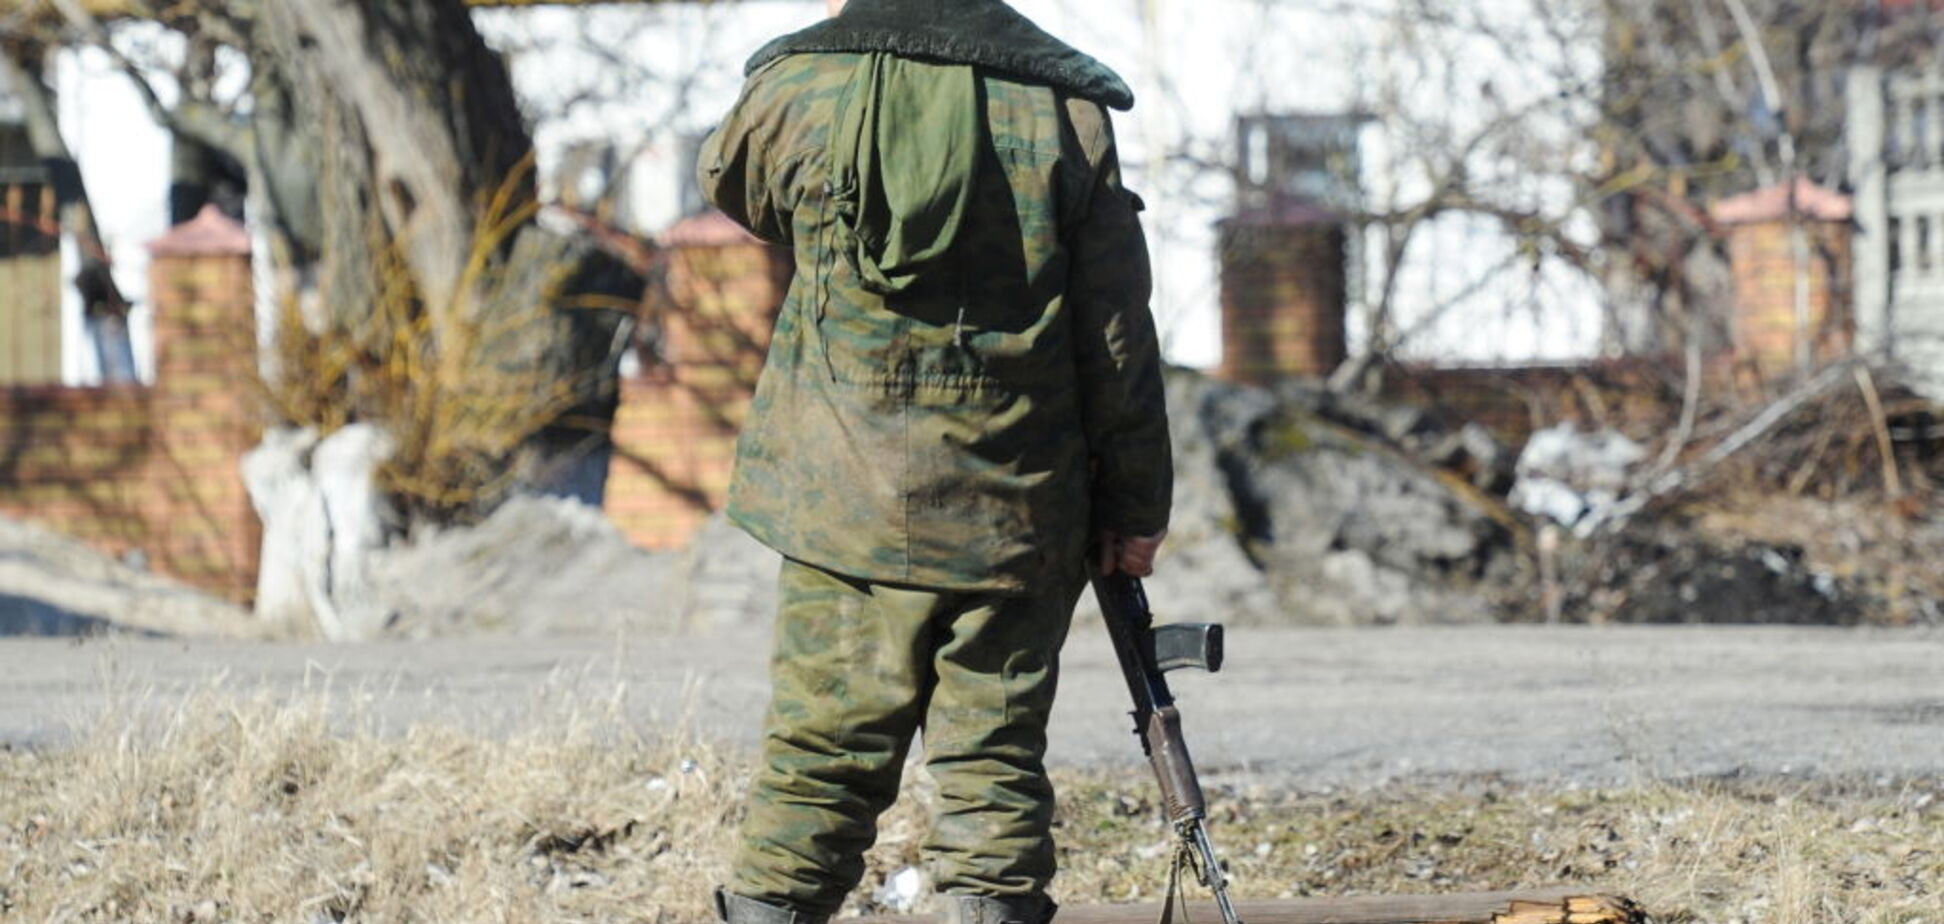 35 раненых, 17 убитых: стало известно о масштабных потерях 'Л/ДНР'